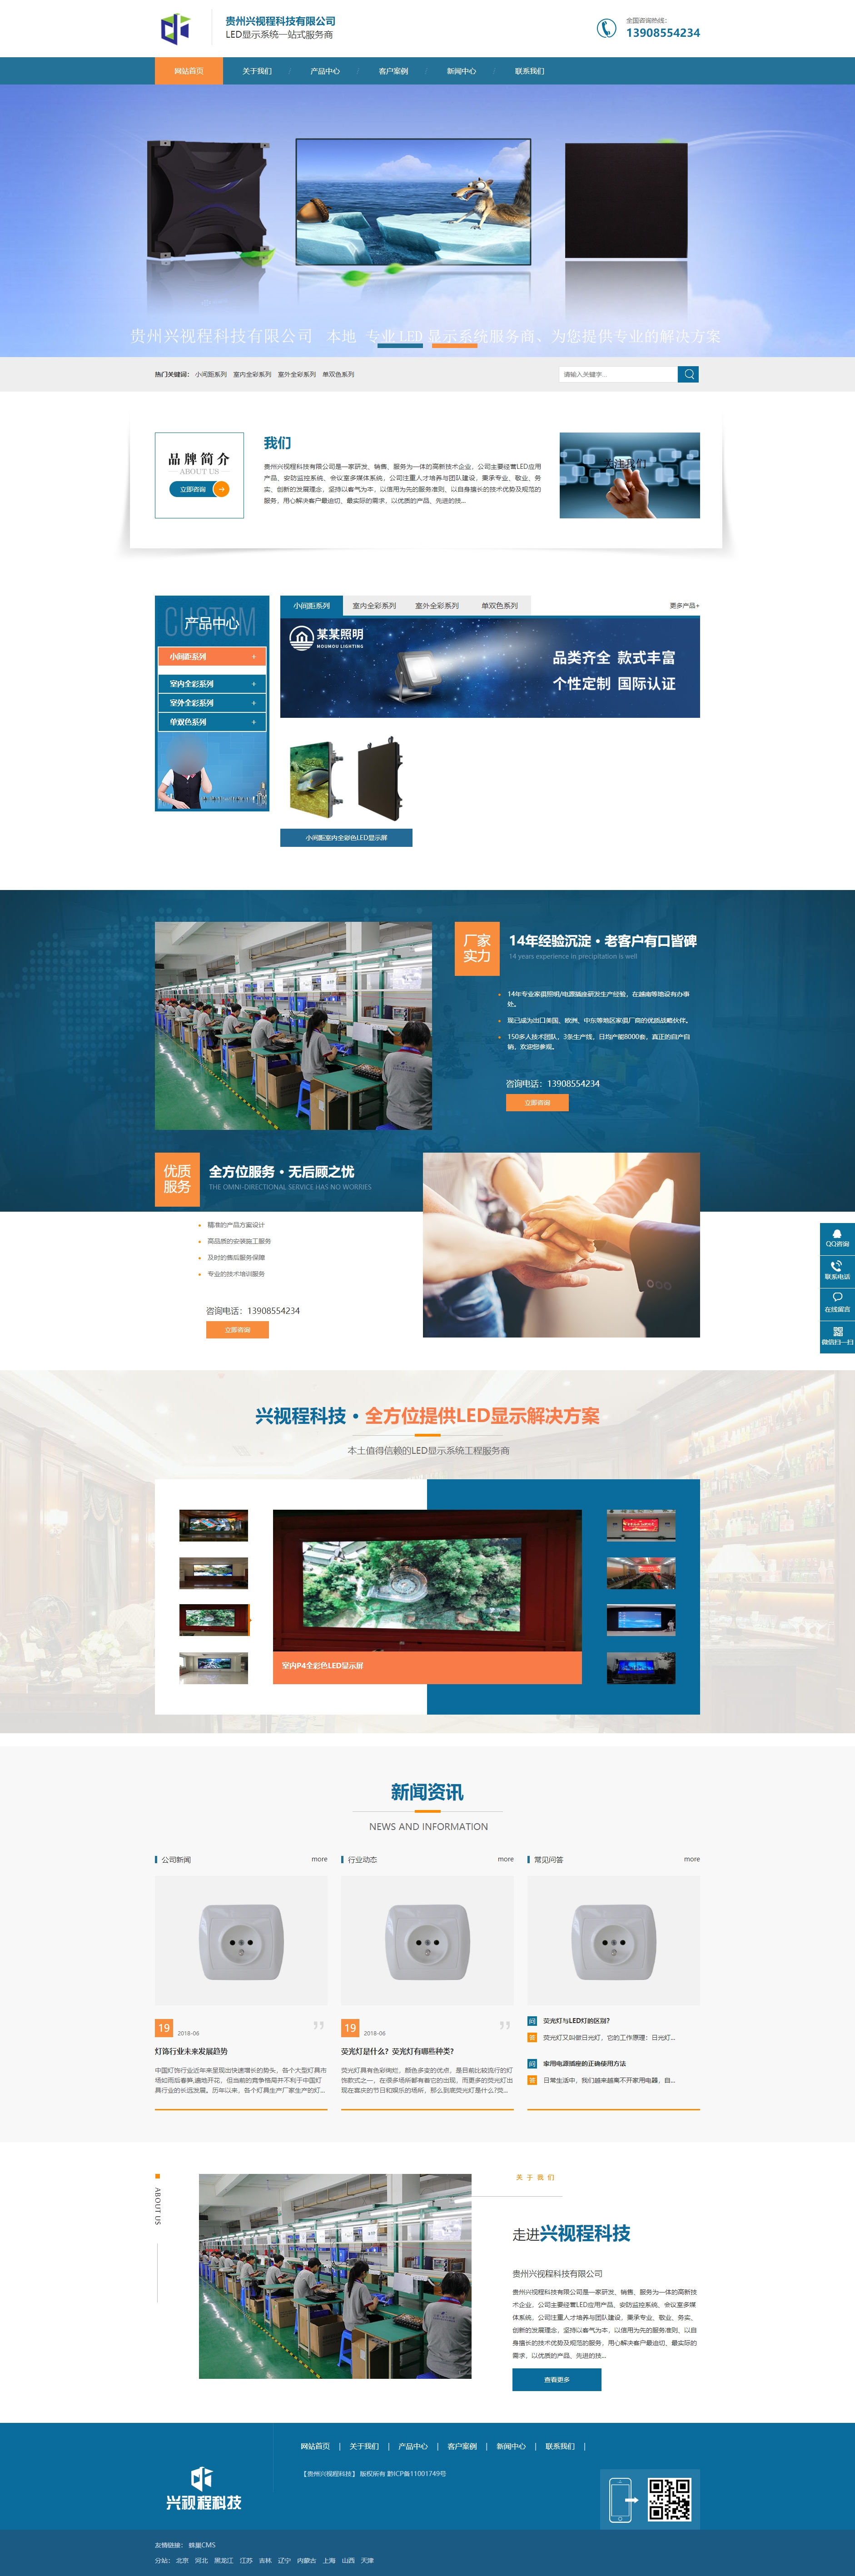 凯里贵州兴视程科技有限公司 网站正式上线